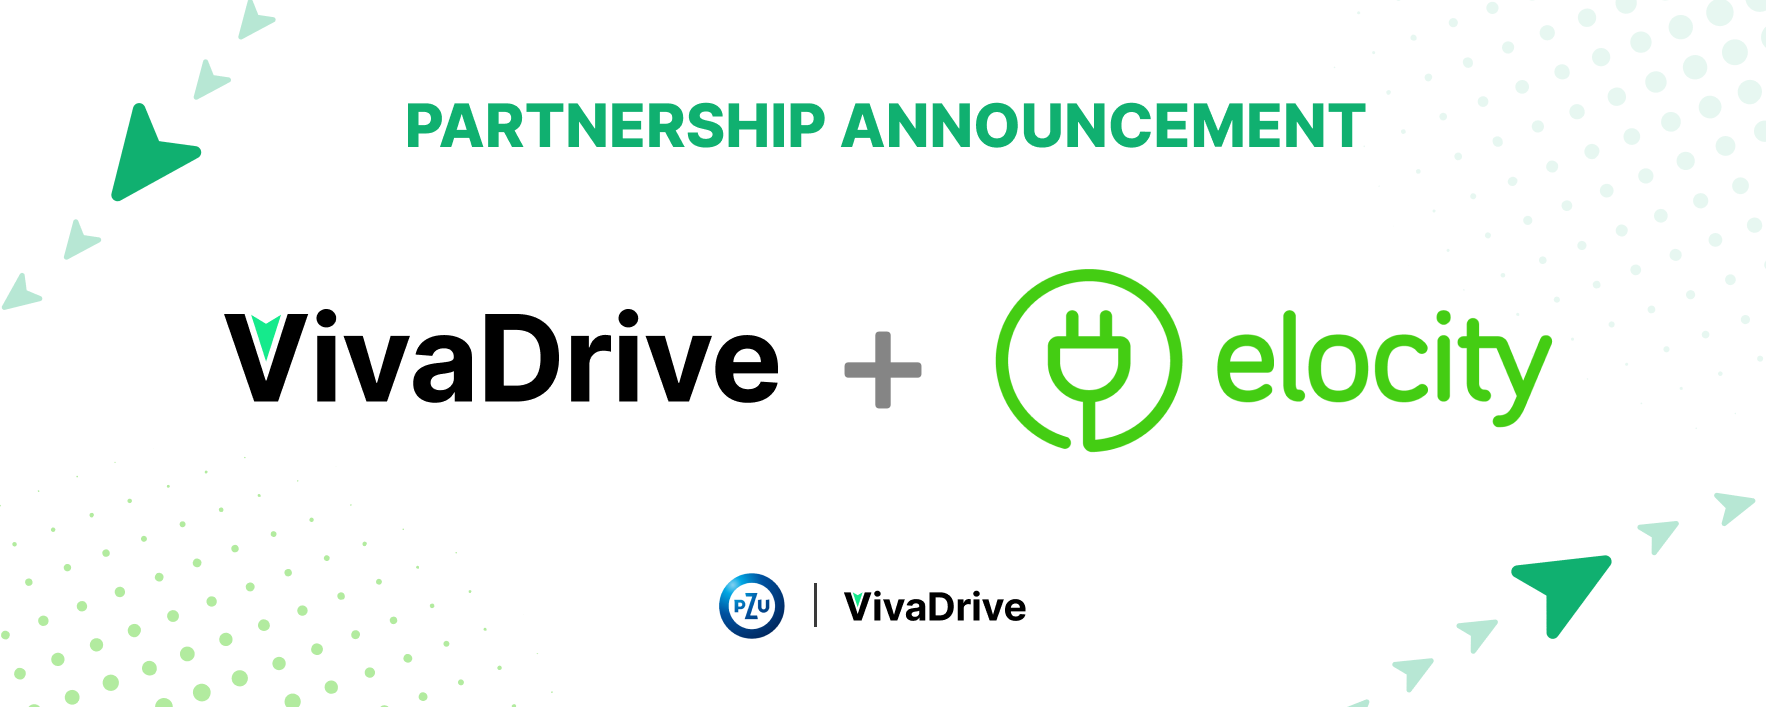 VivaDrive nawiązuje partnerstwo z Elocity, aby wspierać firmy w efektywnej elektryfikacji flot